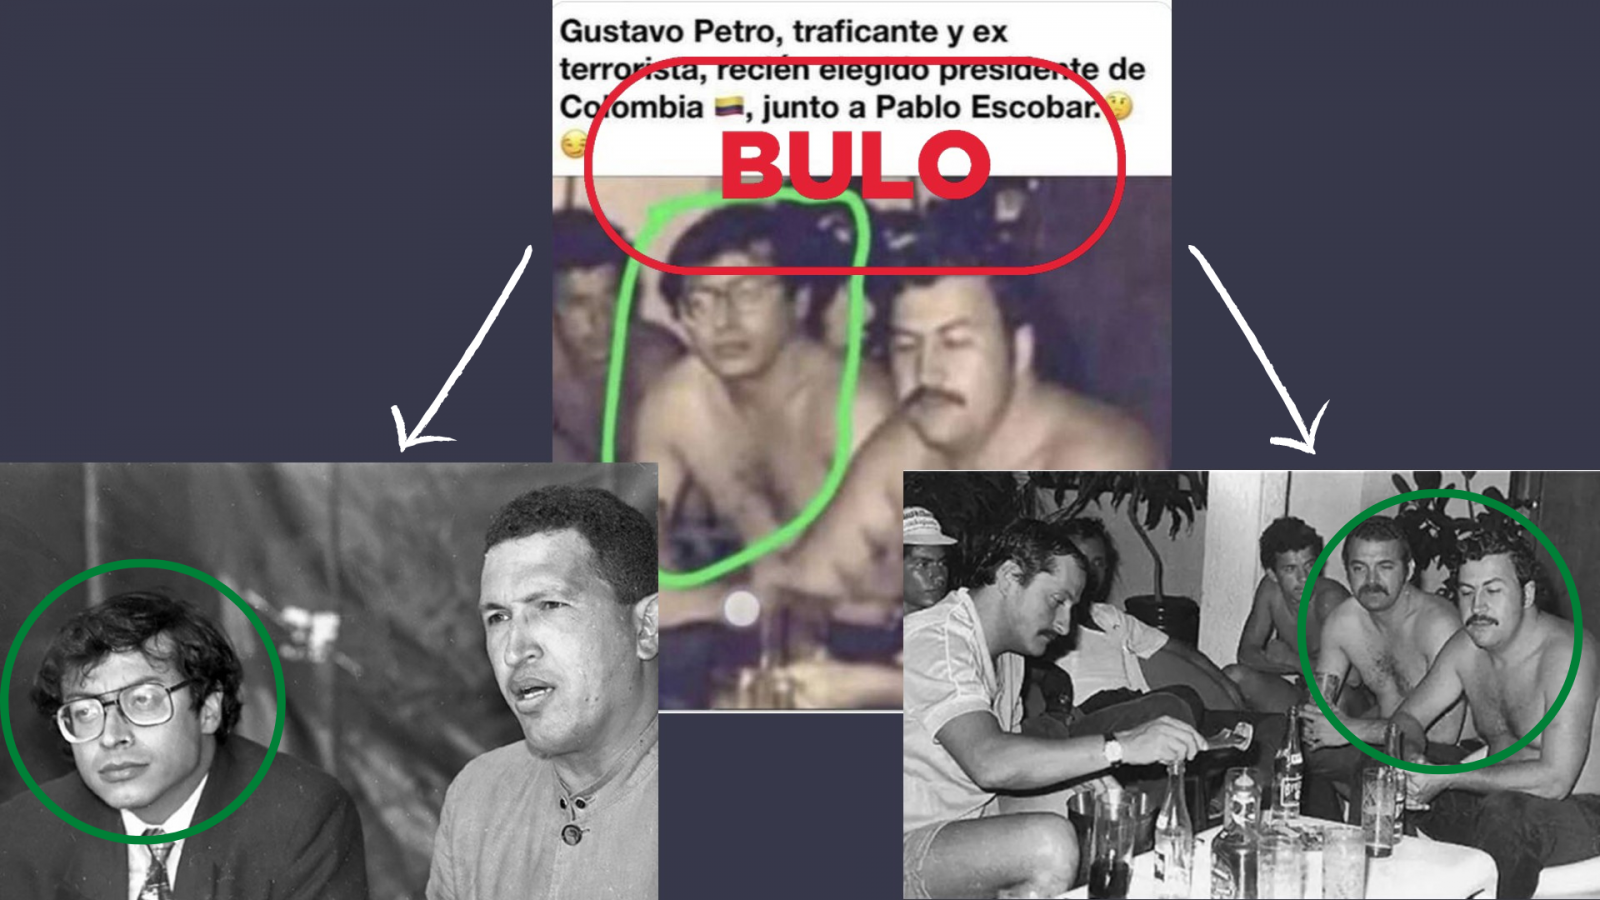 Arriba, la imagen del montaje que se difunde en redes, abajo a la izquierda, la fotografía real de Gustavo Petro junto a Hugo Chávez y abajo a la derecha, la otra imagen real de Pablo Escobar, con el sello 'Bulo' en rojo